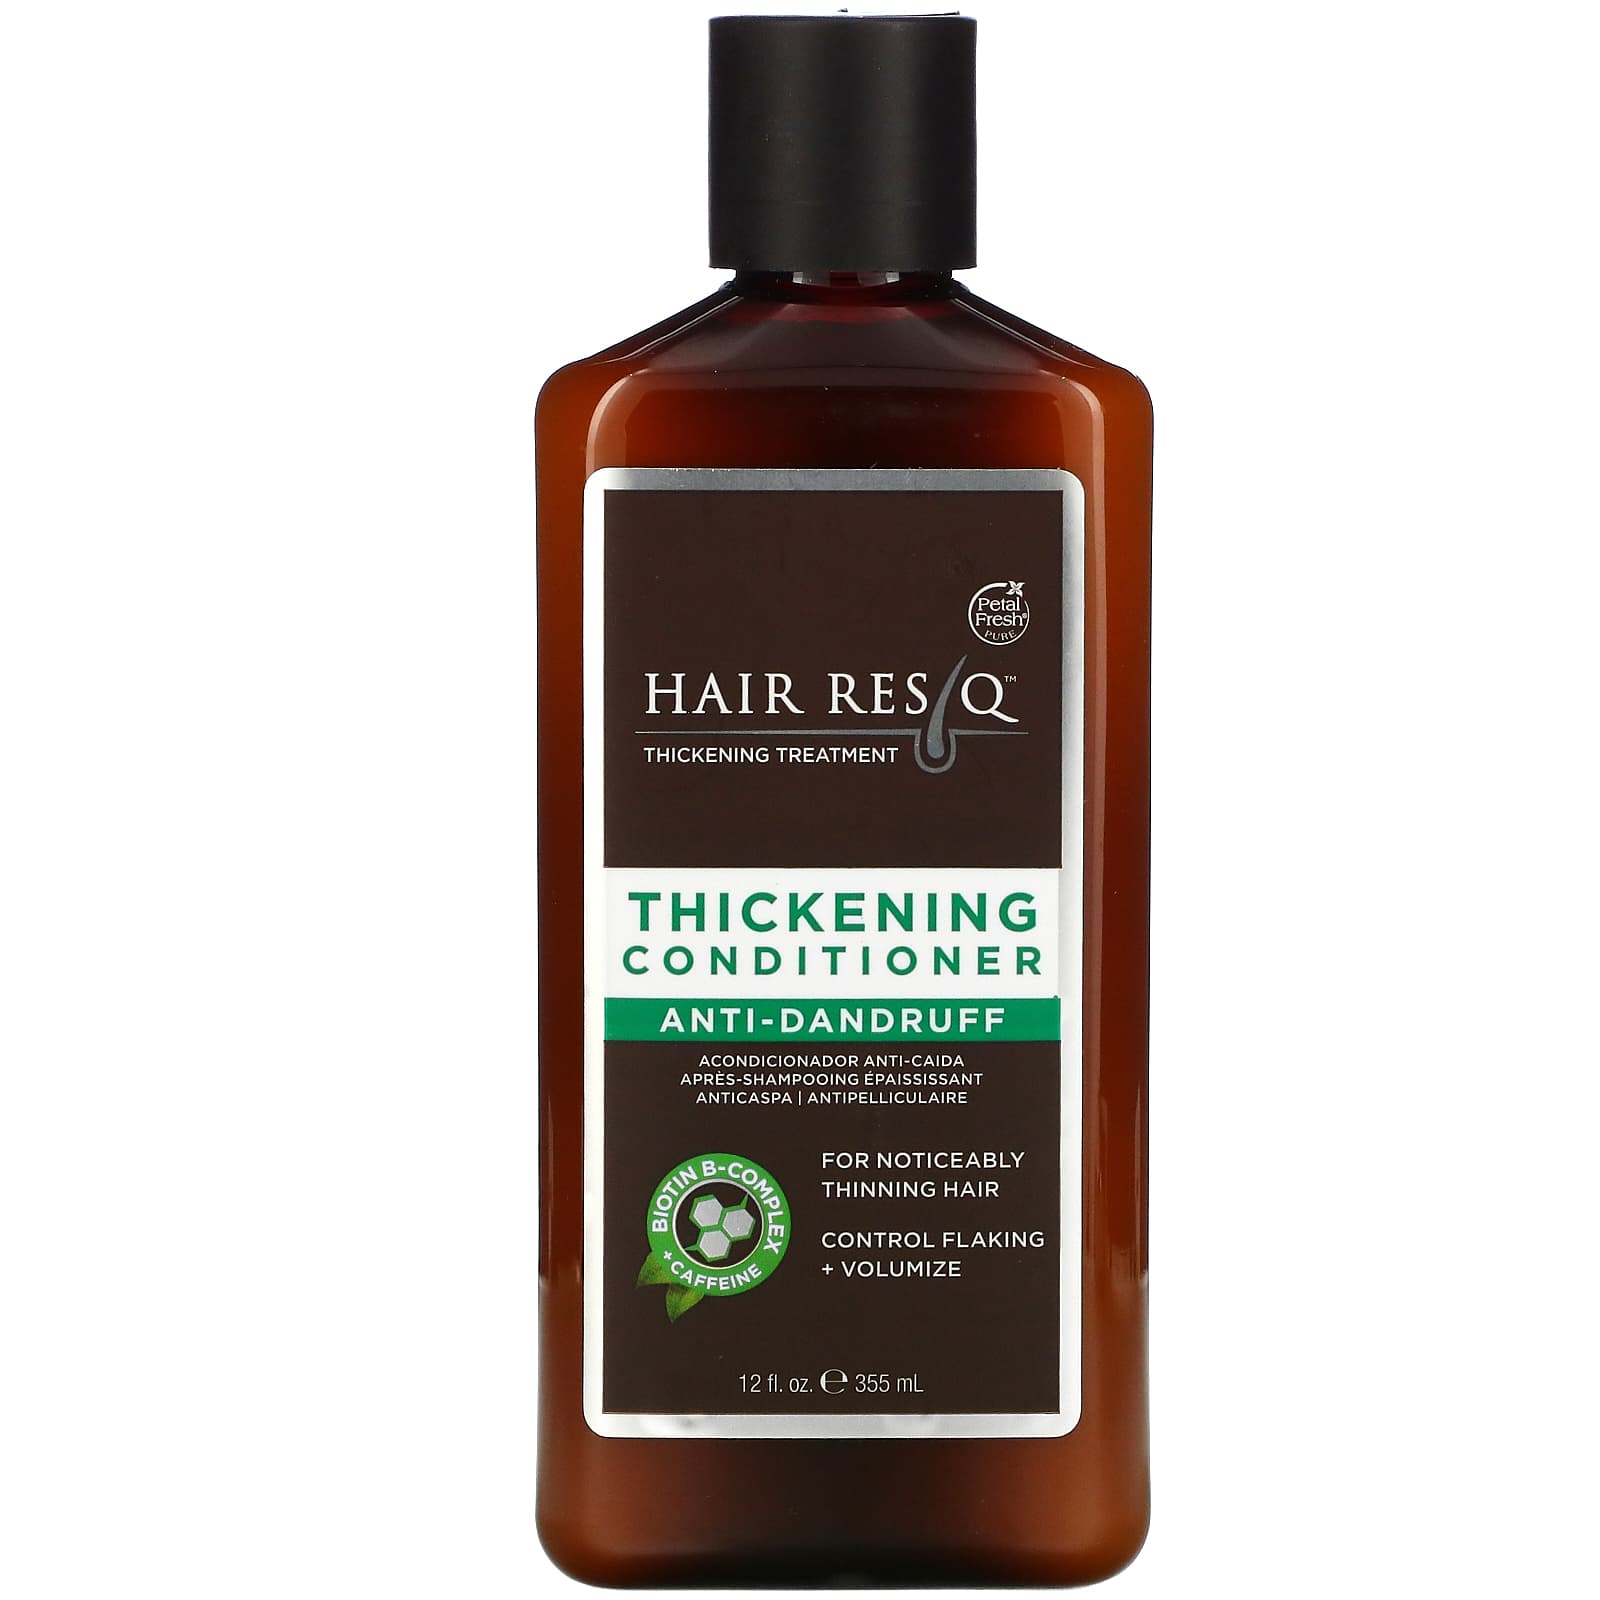 petal fresh hair rescue szampon przeciwłupieżowy